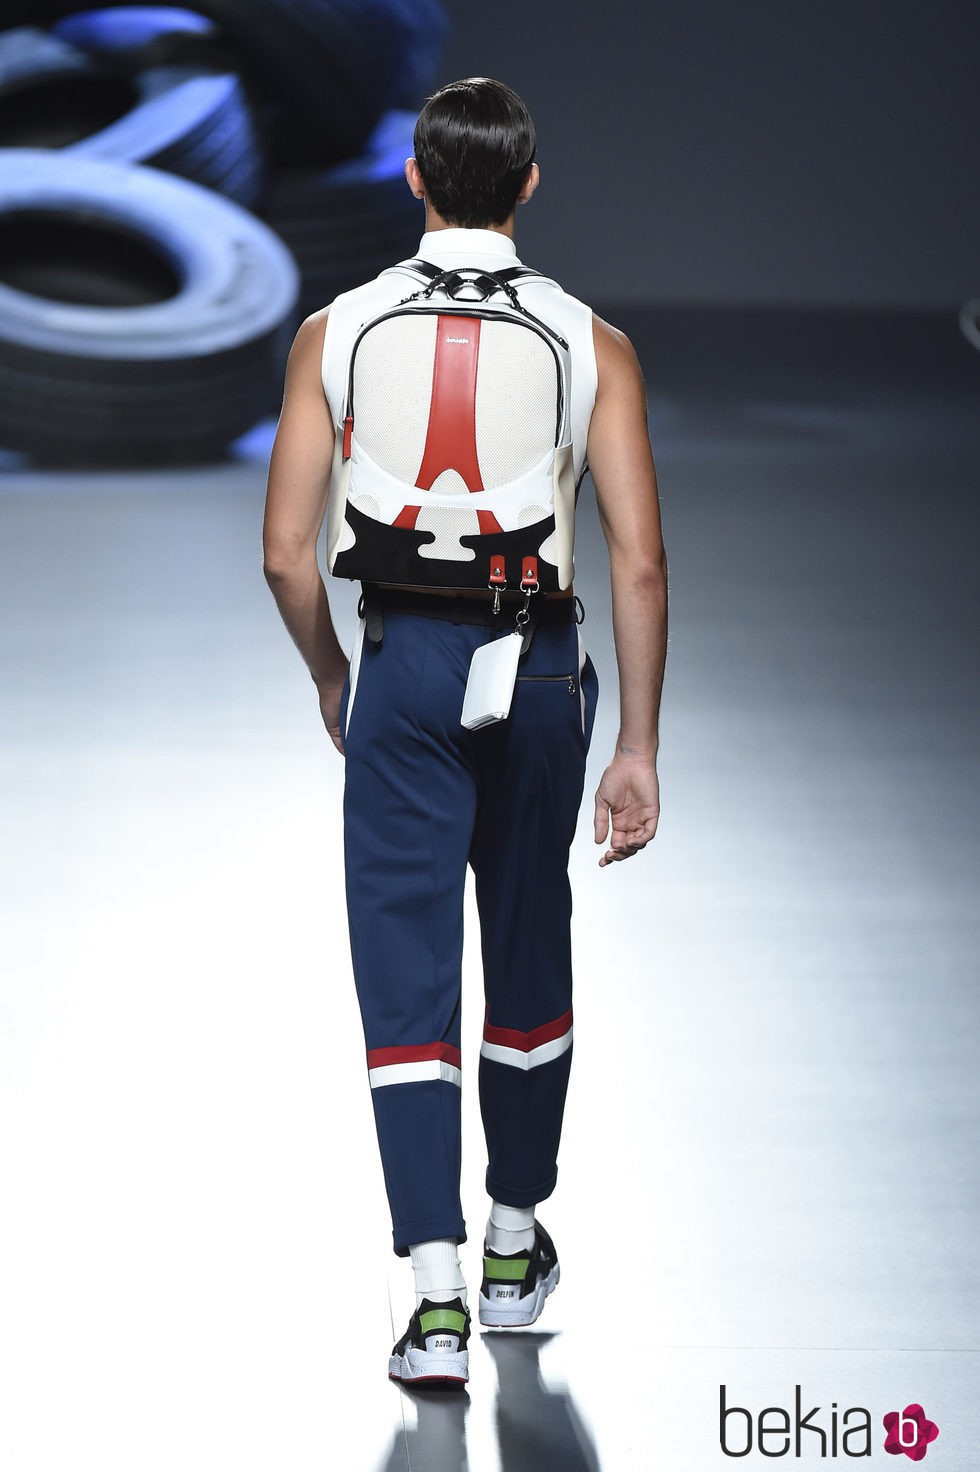 Corrector de postura y pantalón largo de la colección de primavera/verano 2016 de David Delfin en Madrid Fashion Week